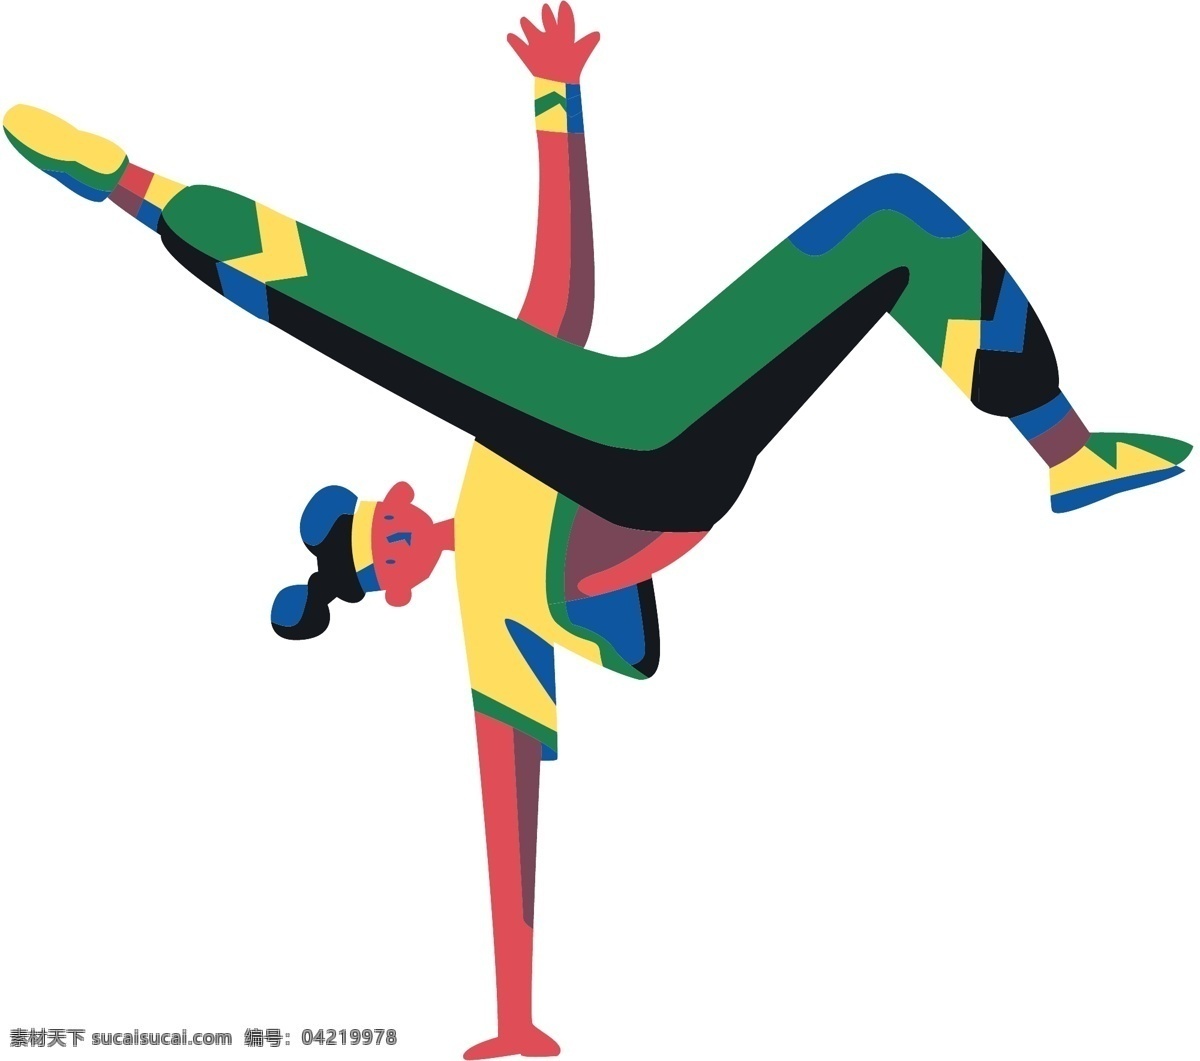 世界 标 动 运员 倒立 卡通 手绘 世界杯 动运员 卡通手绘 跳舞 动动 卡通人物 矢量图形